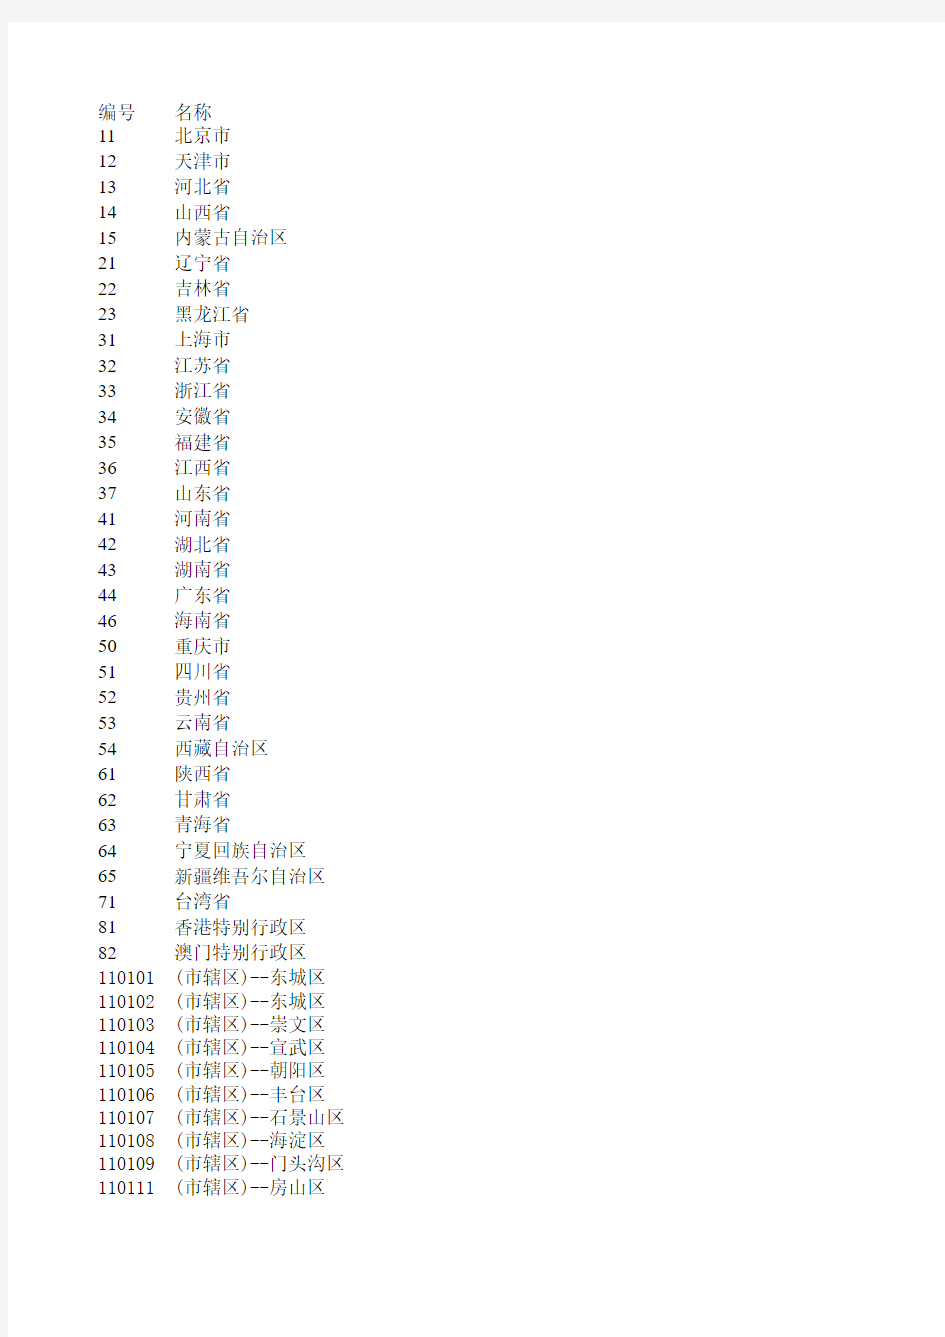 中国地区代码表(更详细)